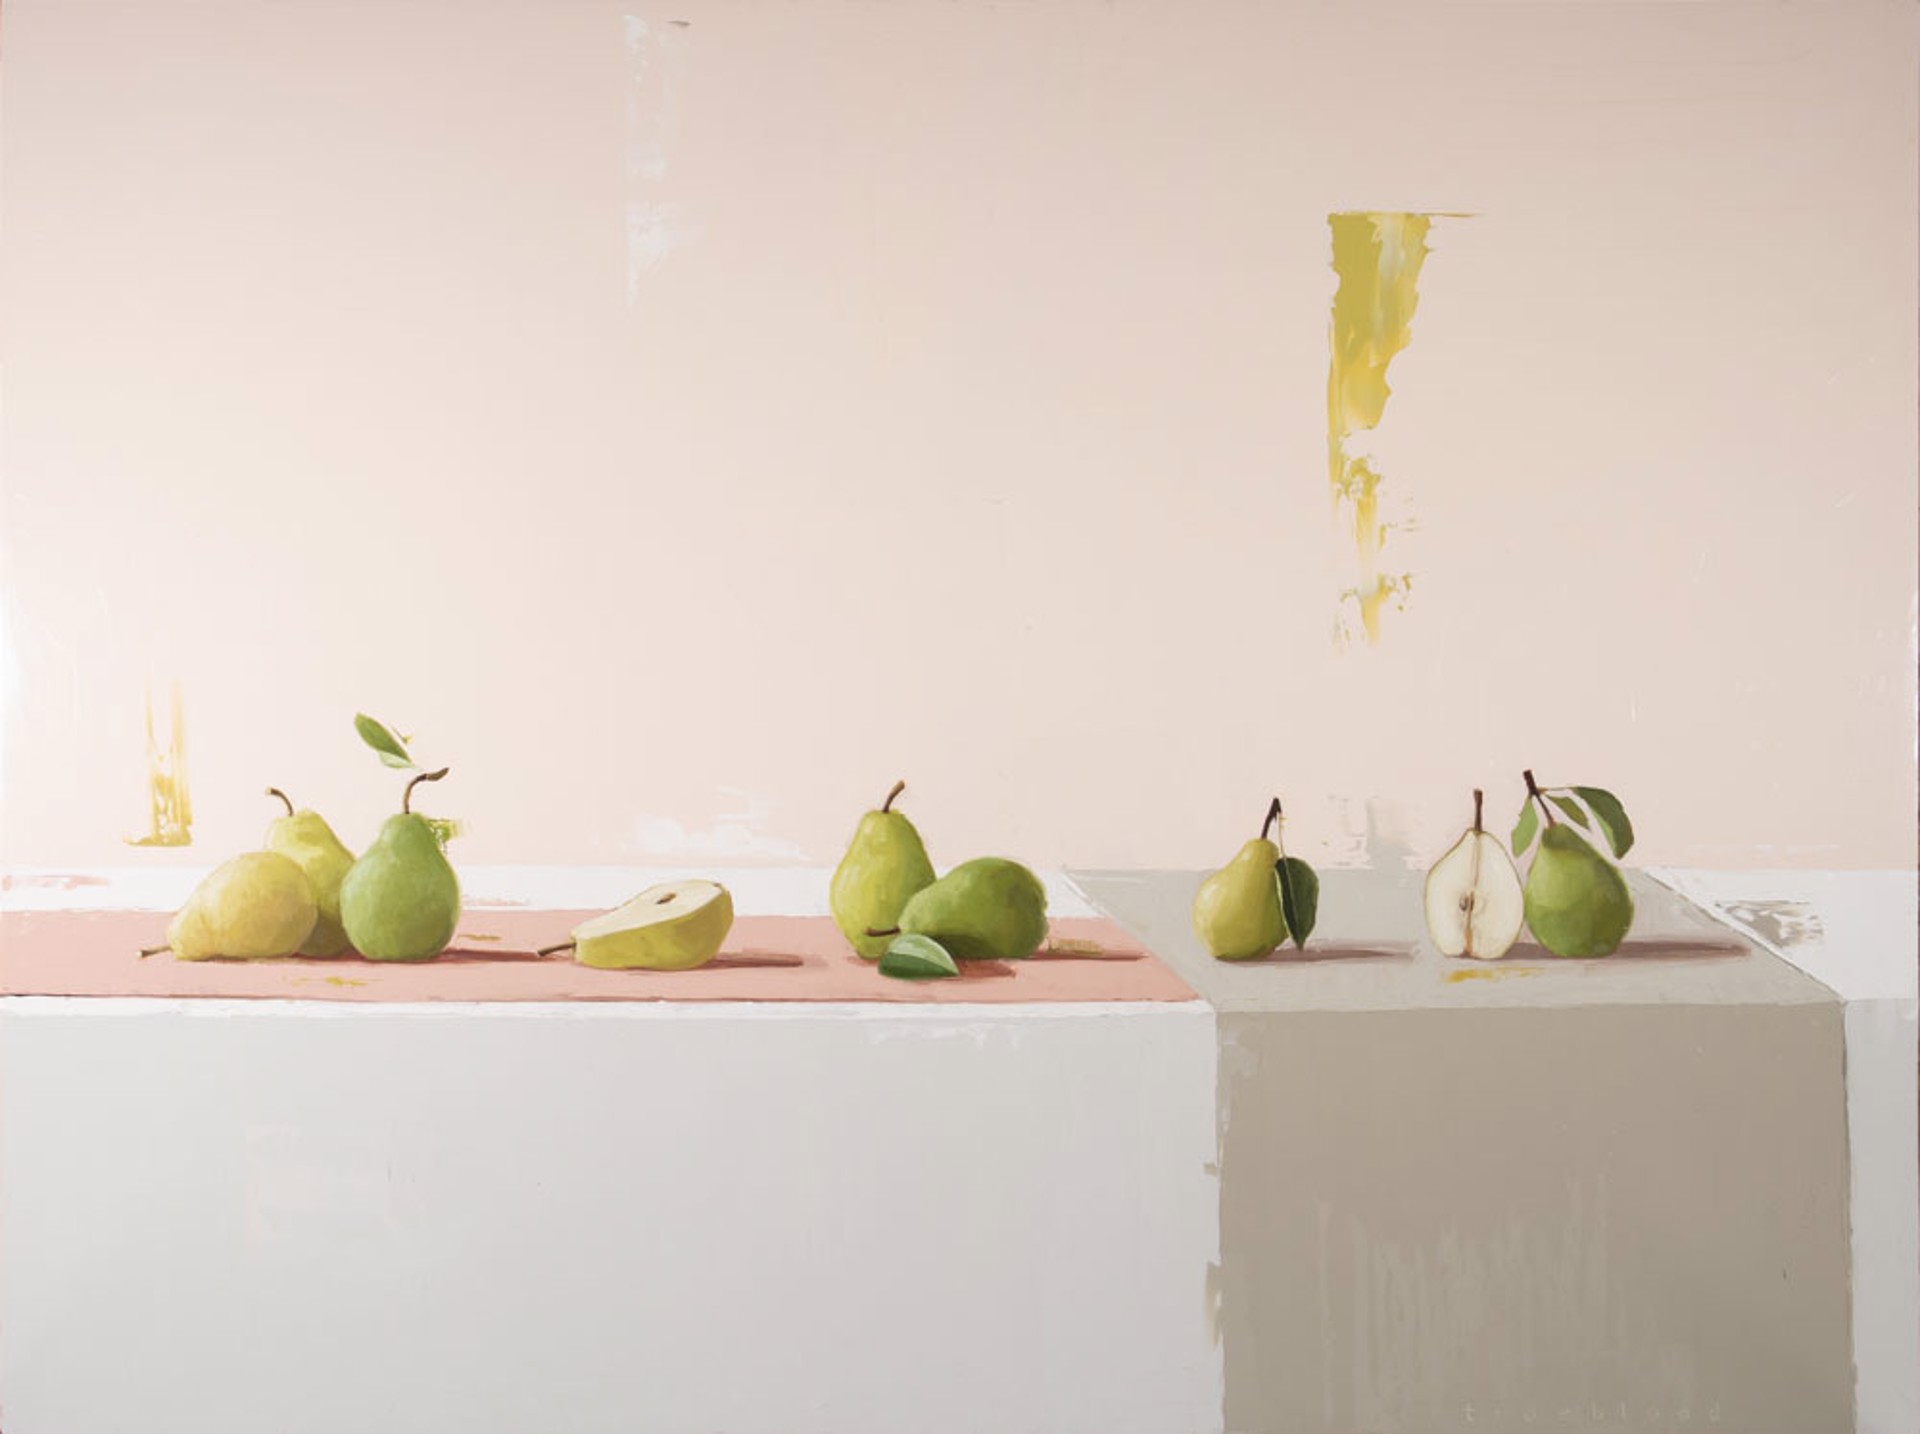 Harvested Pears by Megan Trueblood